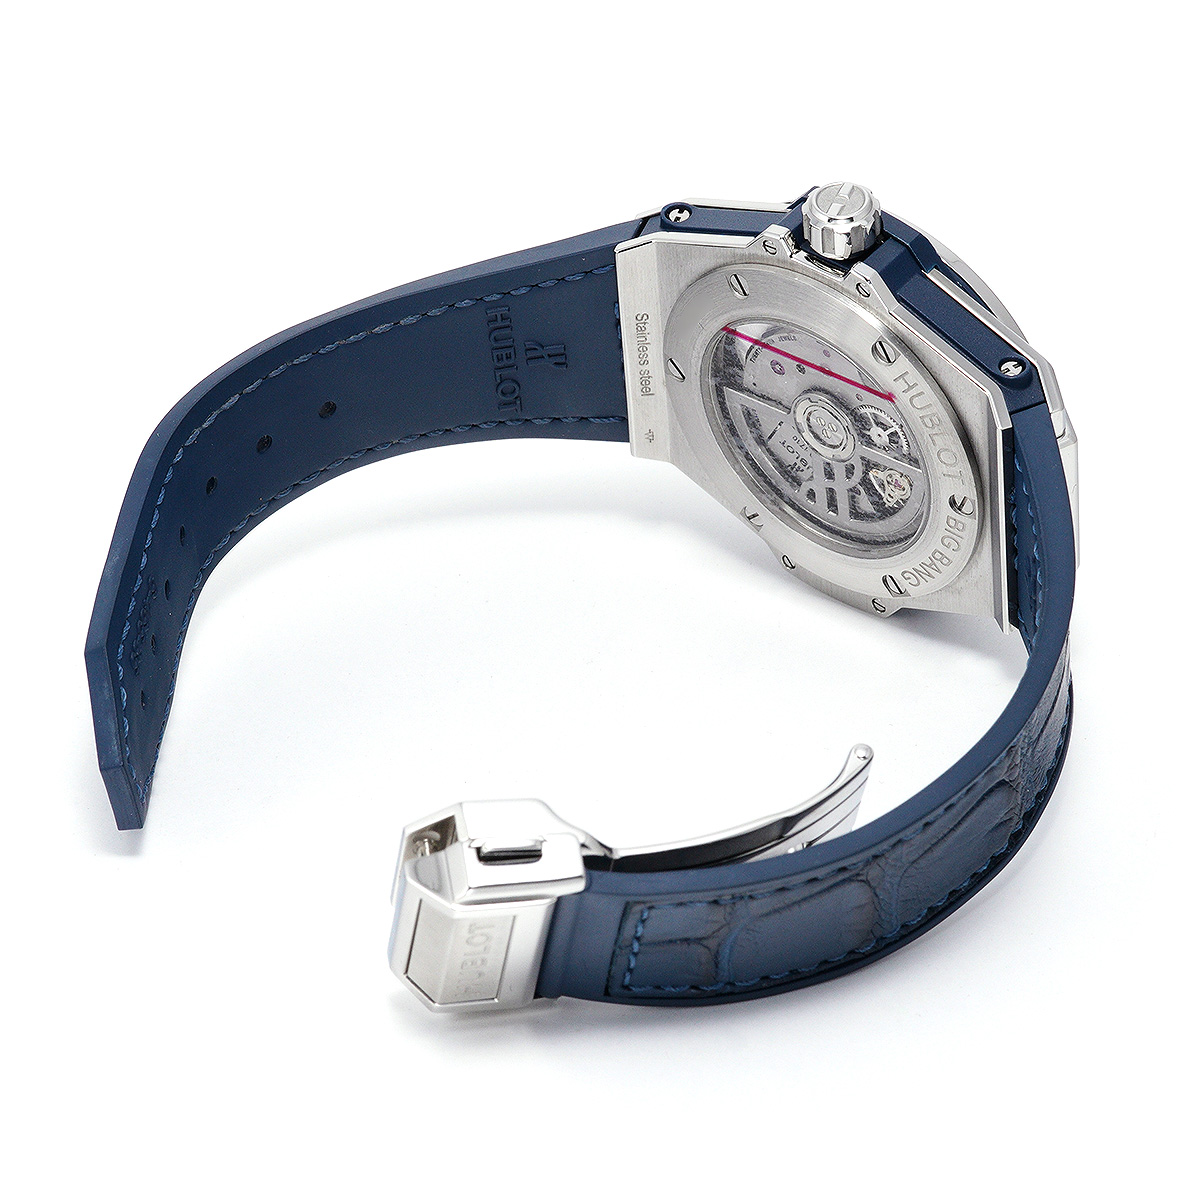 ウブロ HUBLOT 465.SX.7170.LR.1204 ブルー レディース 腕時計